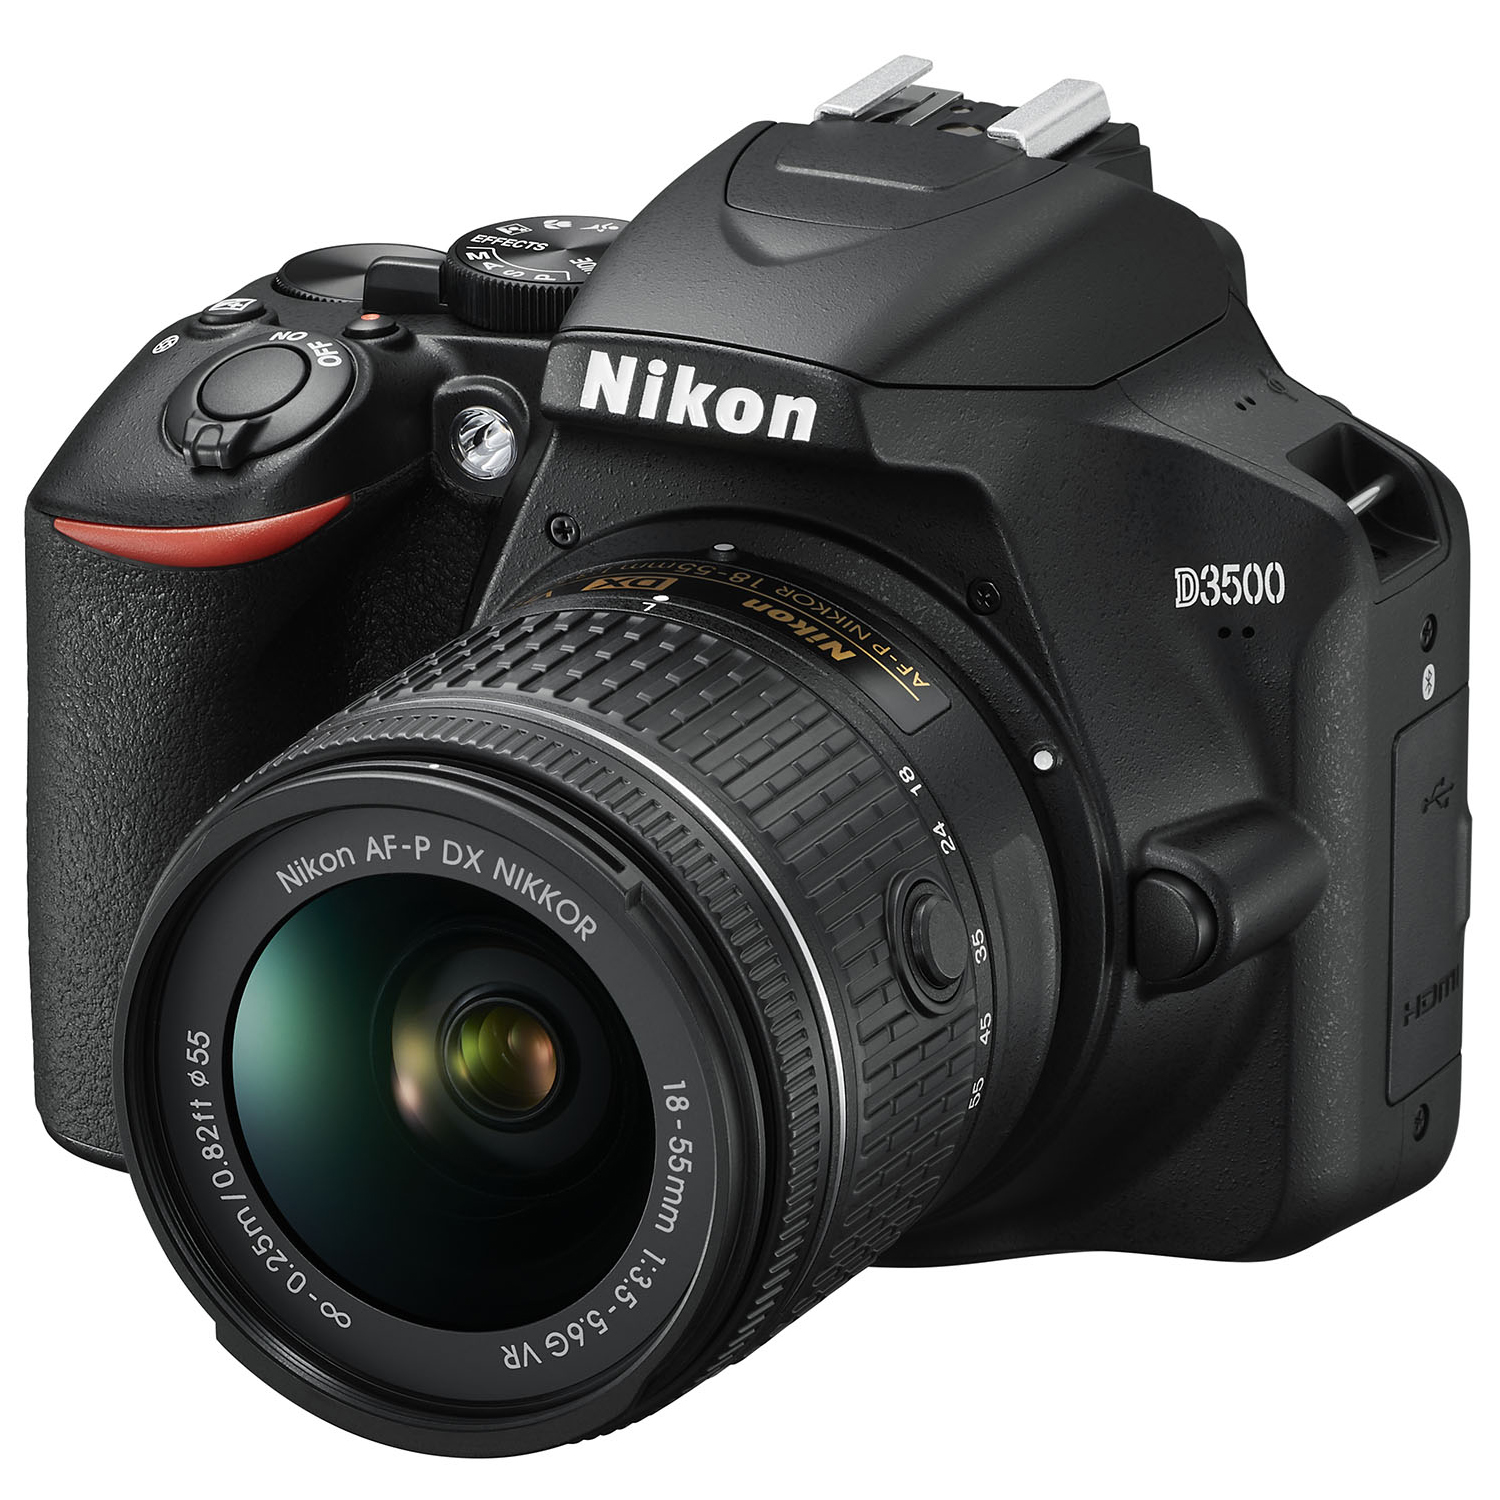 Nikon D3500 W/ AF-P DX Nikkor 18-55mm f/3.5-5.6G VR Black - image 5 of 10